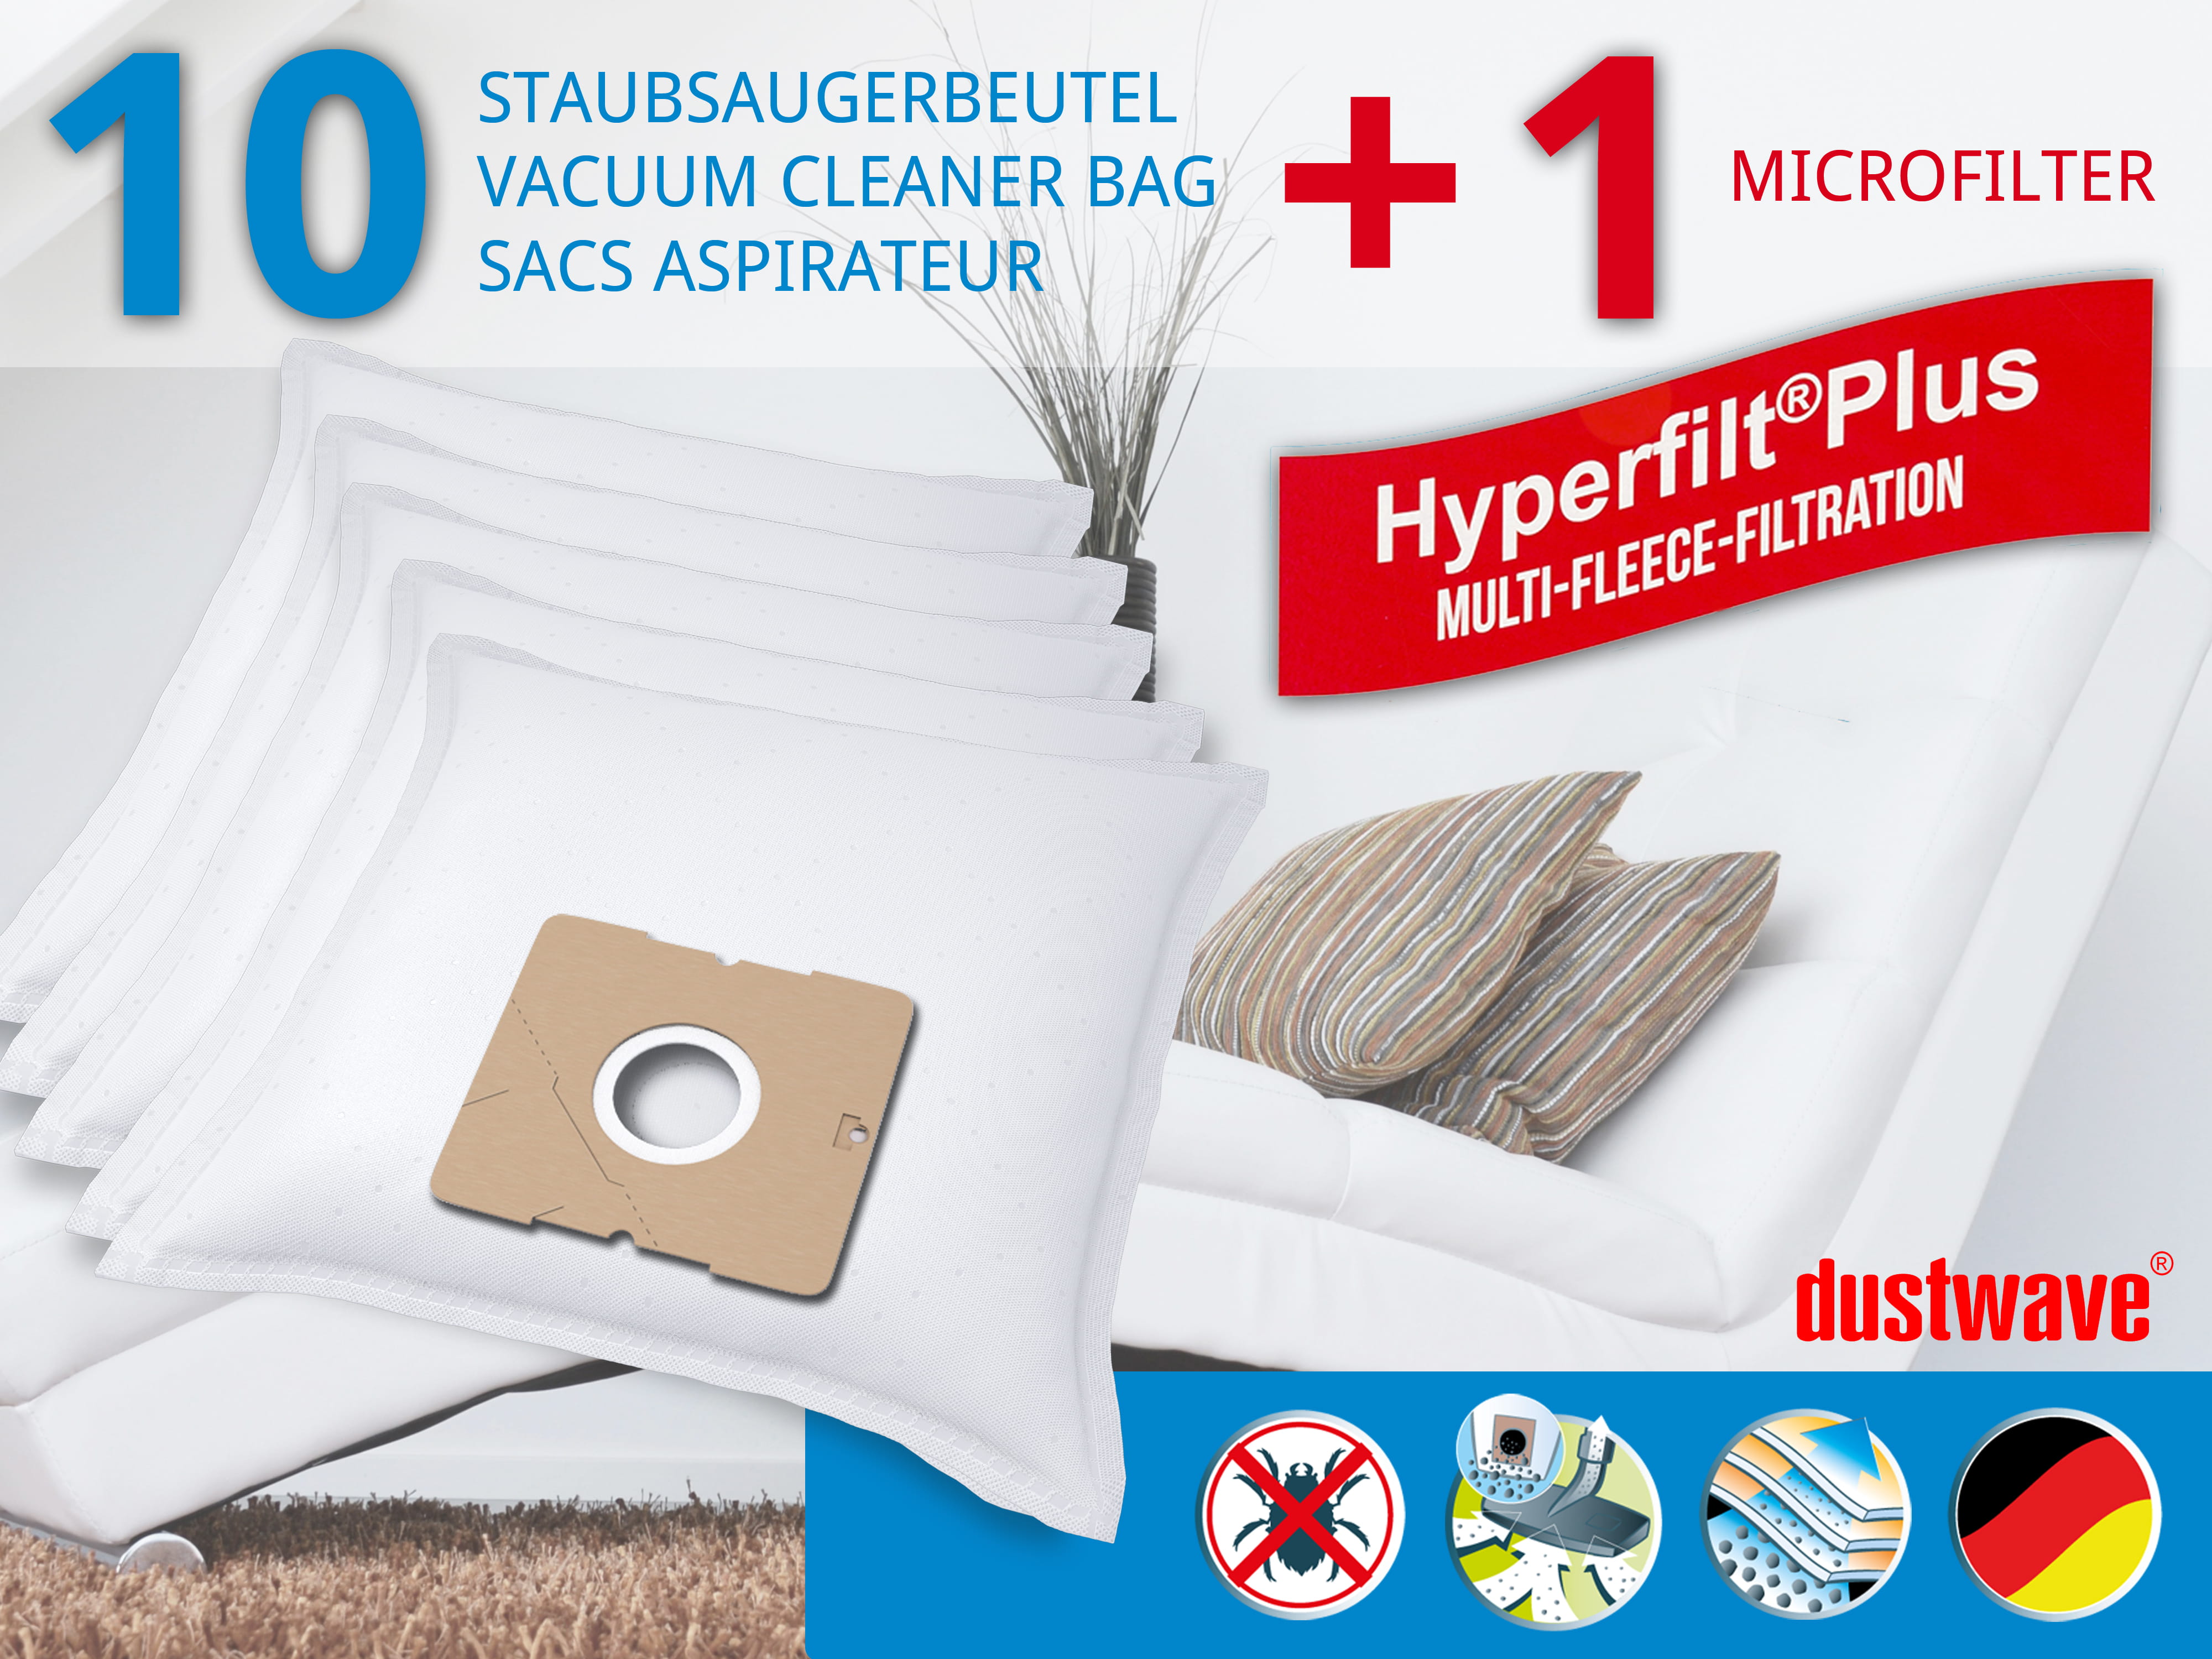 Dustwave® 10 Staubsaugerbeutel für Blue Sky BVC 117 / BVC117 - hocheffizient, mehrlagiges Mikrovlies mit Hygieneverschluss - Made in Germany